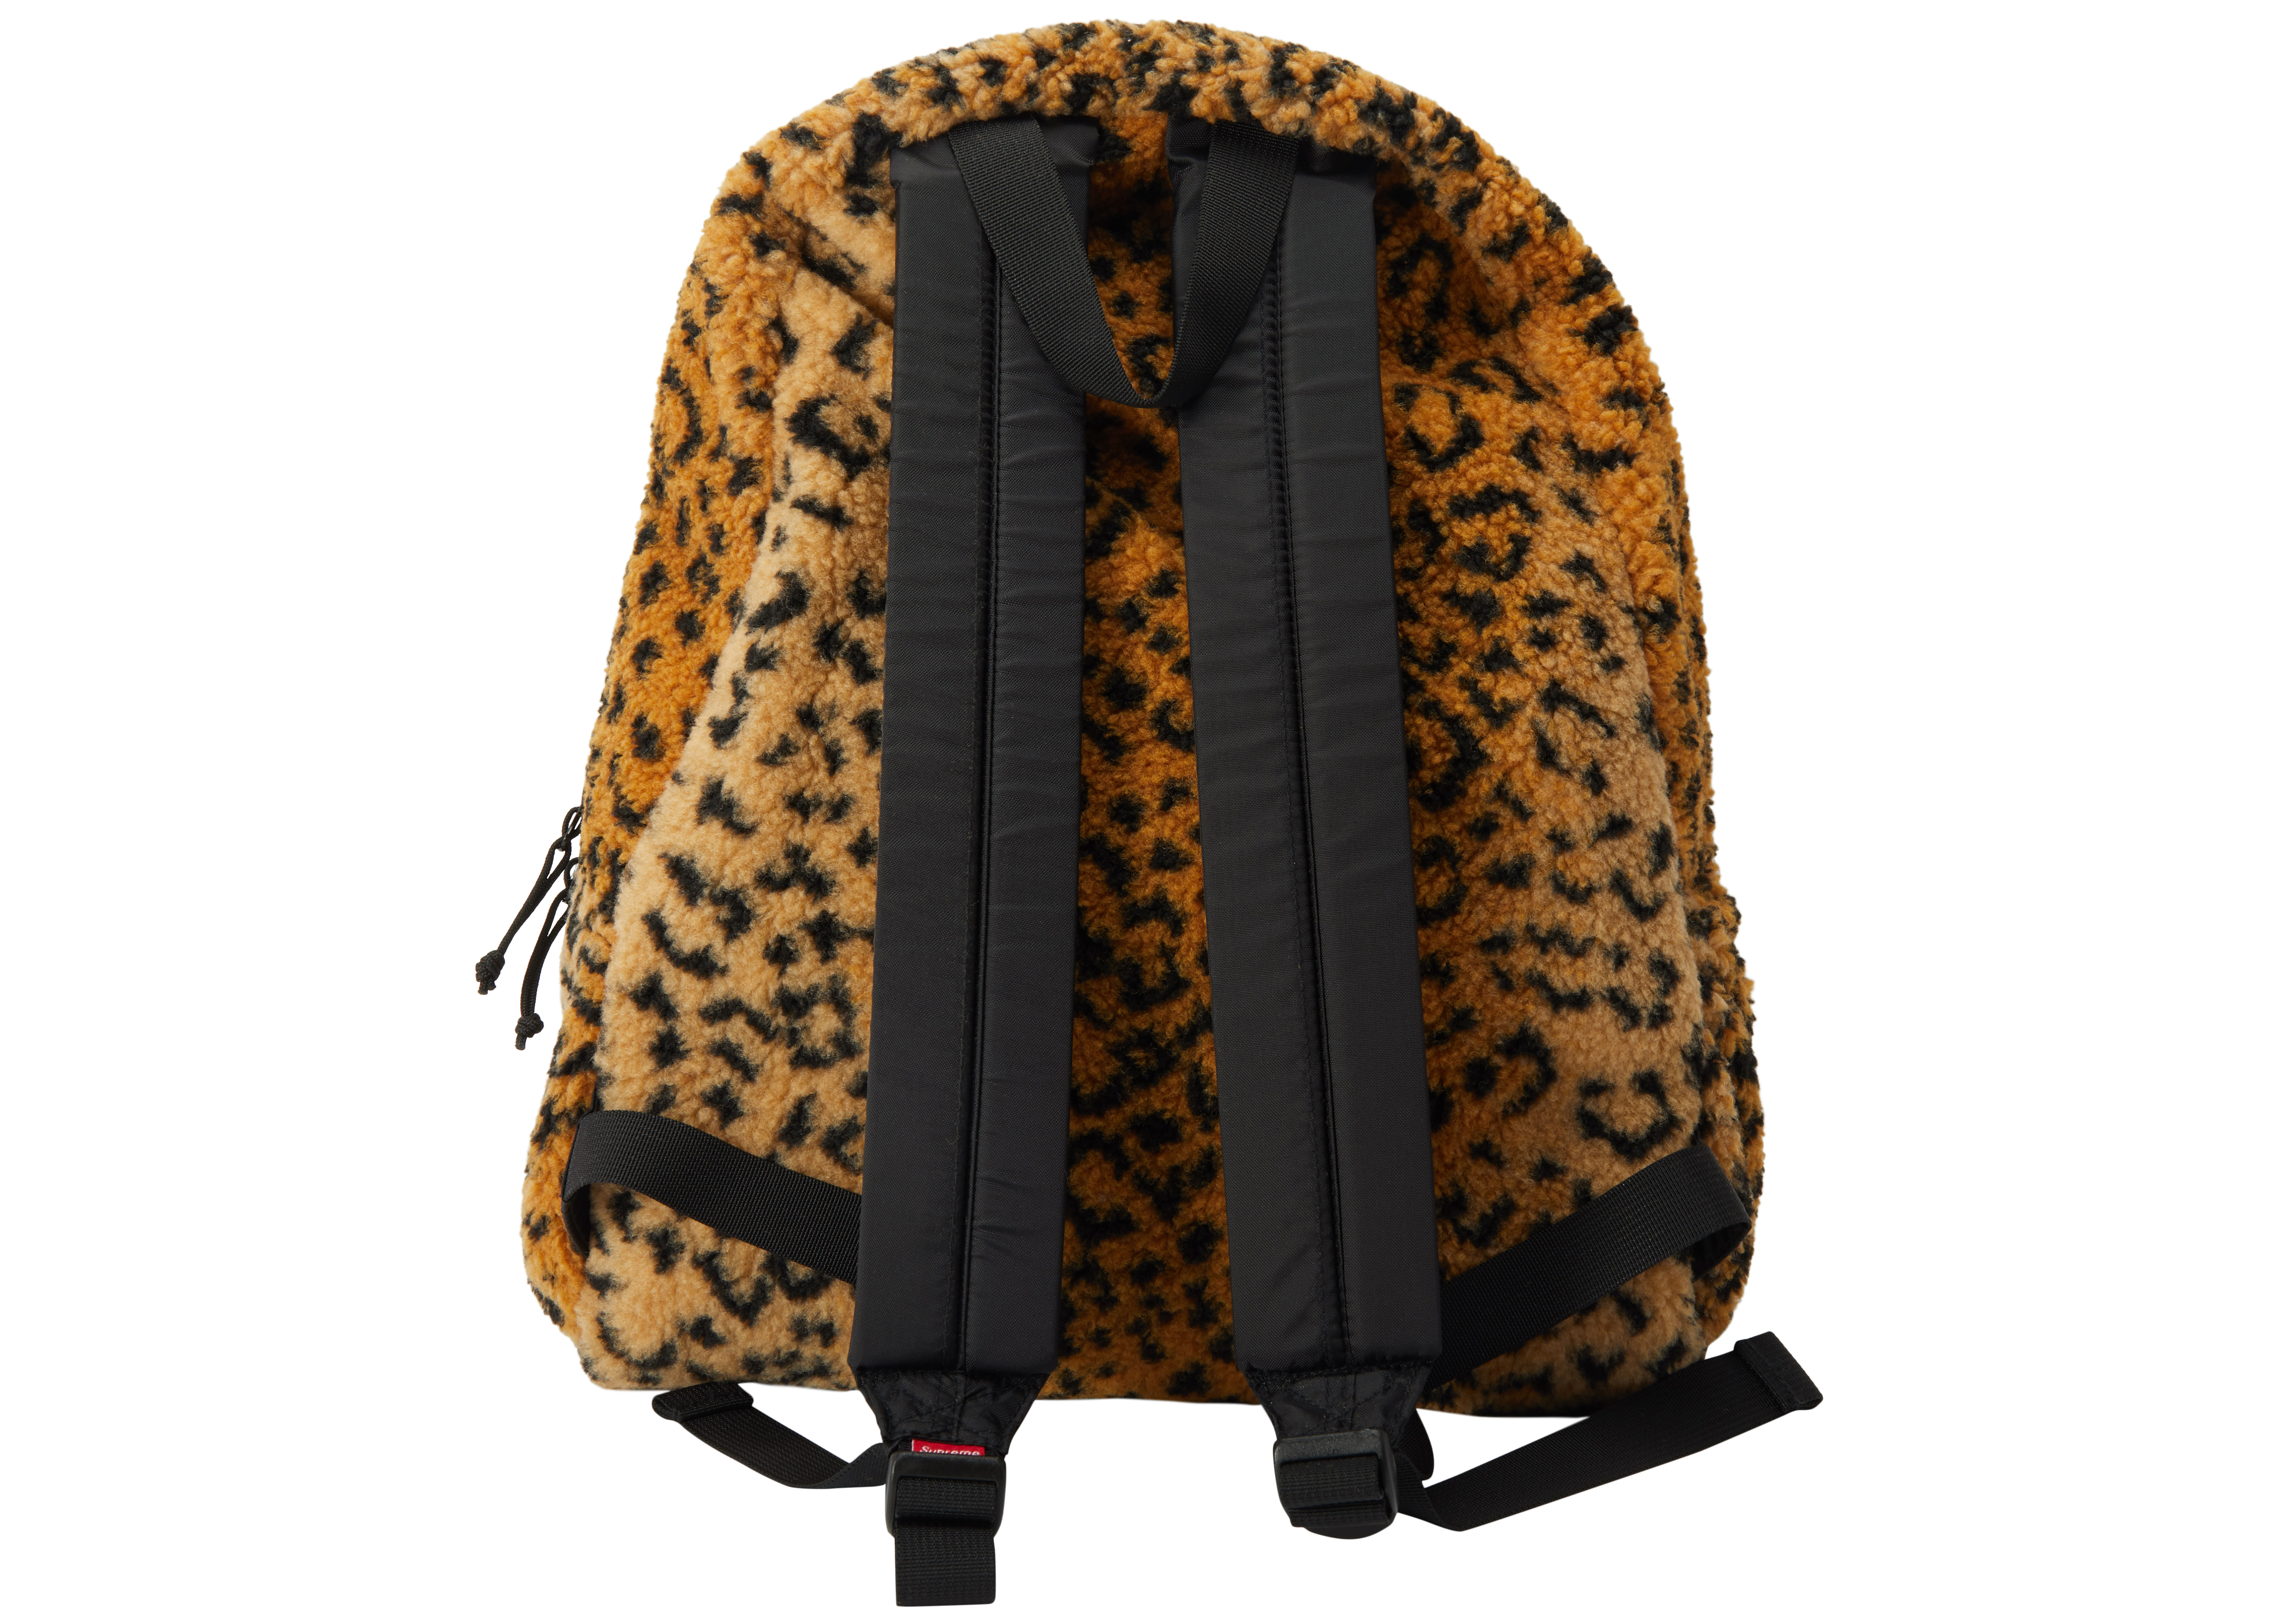 Supreme Leopard Fleece Backpack Yellow